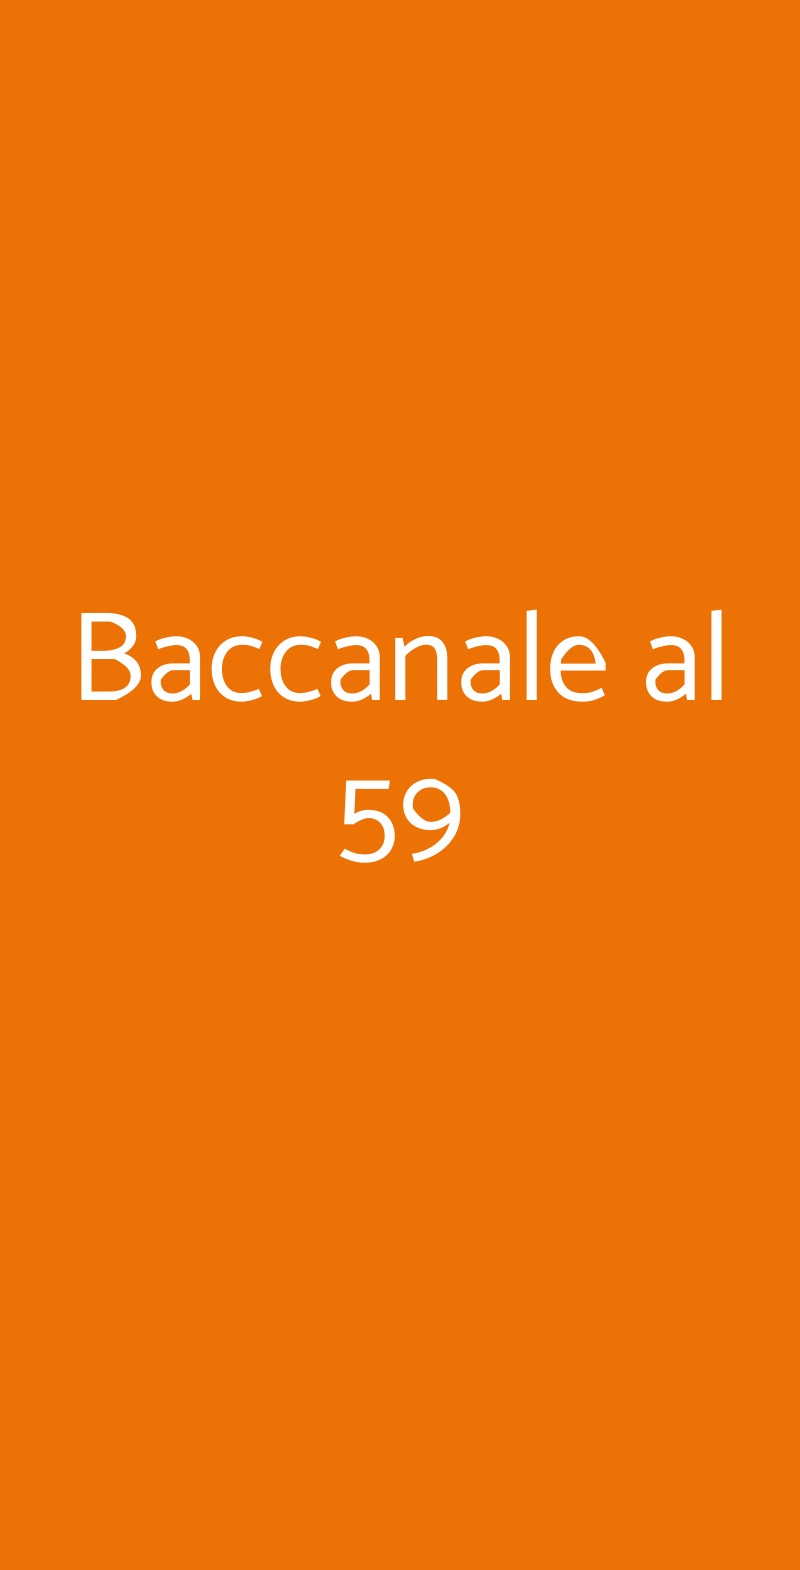 Baccanale al 59 Roma menù 1 pagina